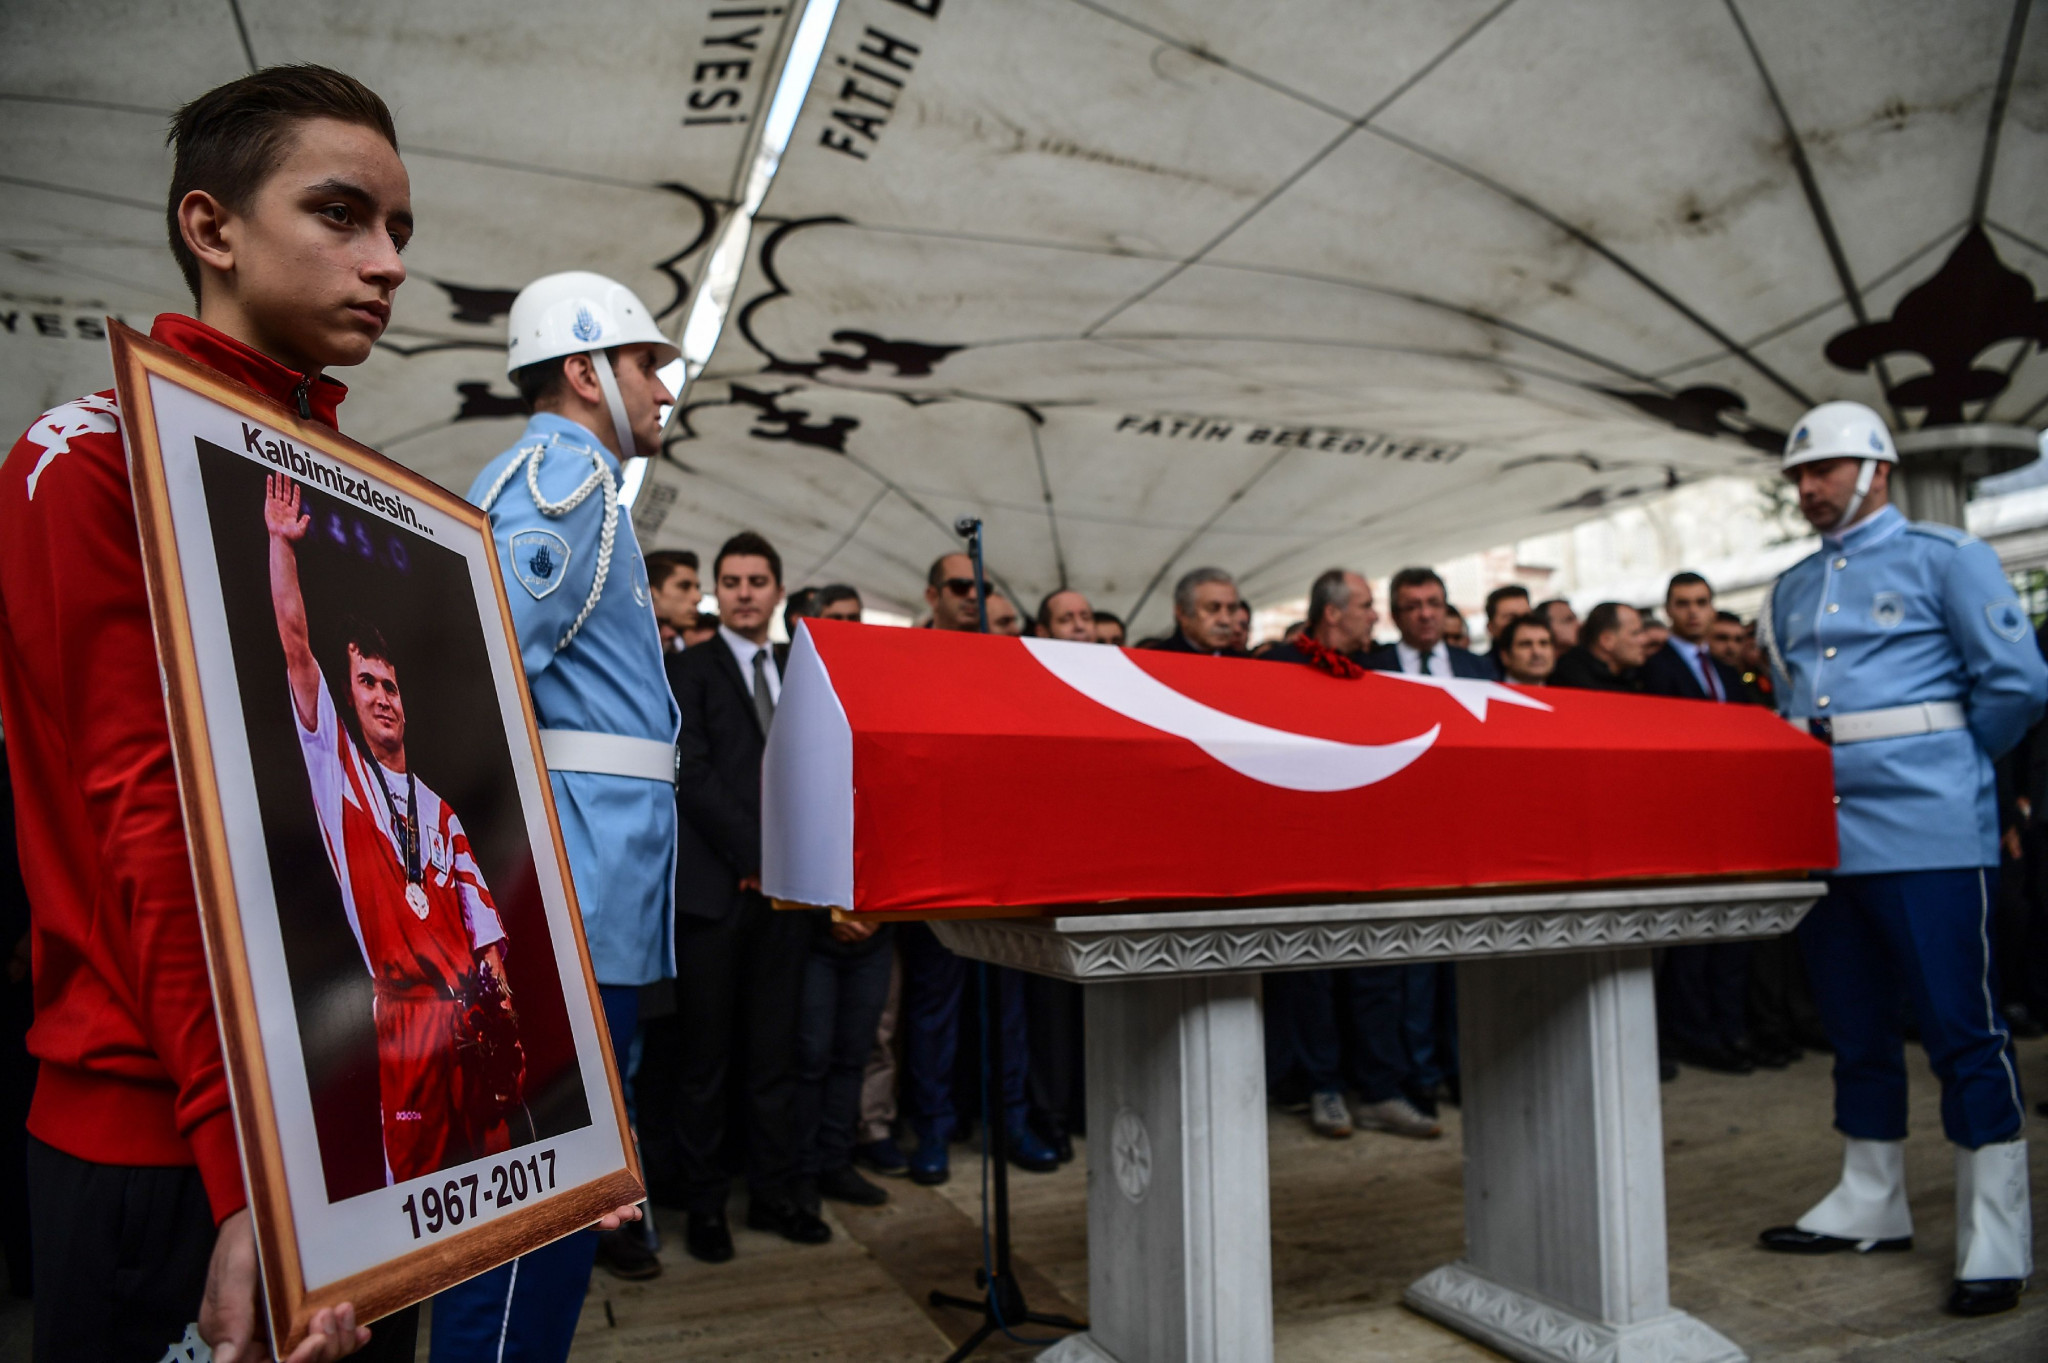 Naim Süleymanoğlu died in November 2017 ©Getty Images